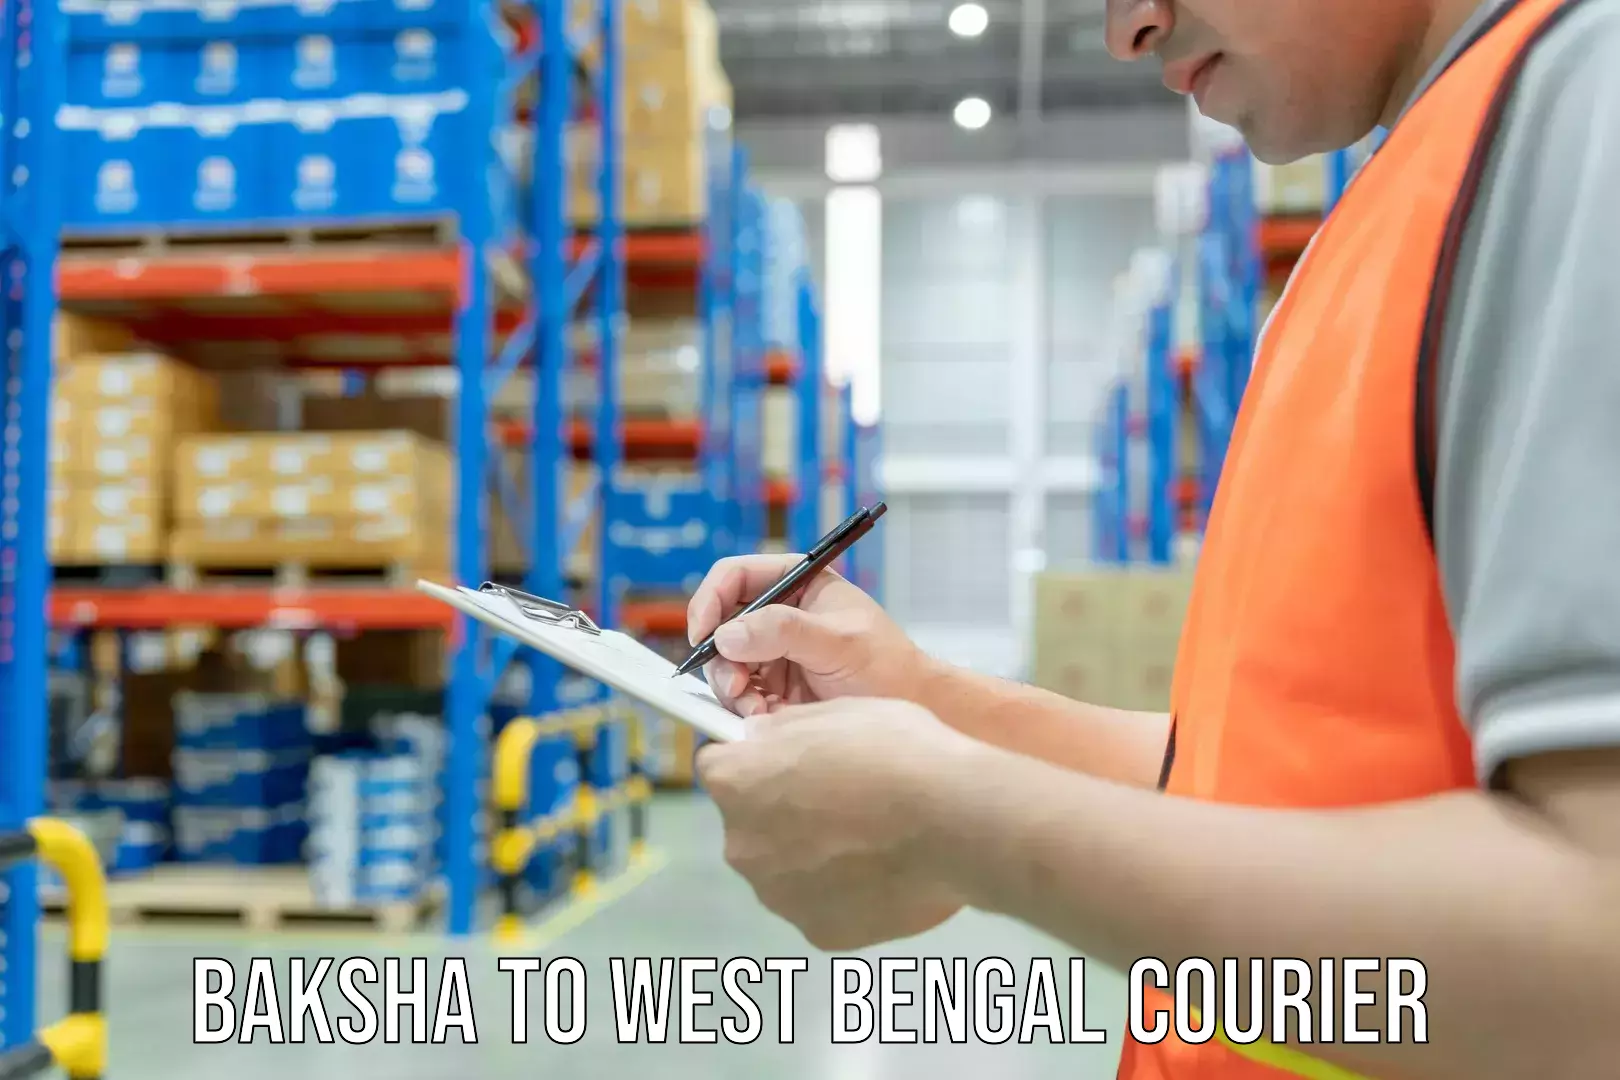 Professional courier services Baksha to West Bengal